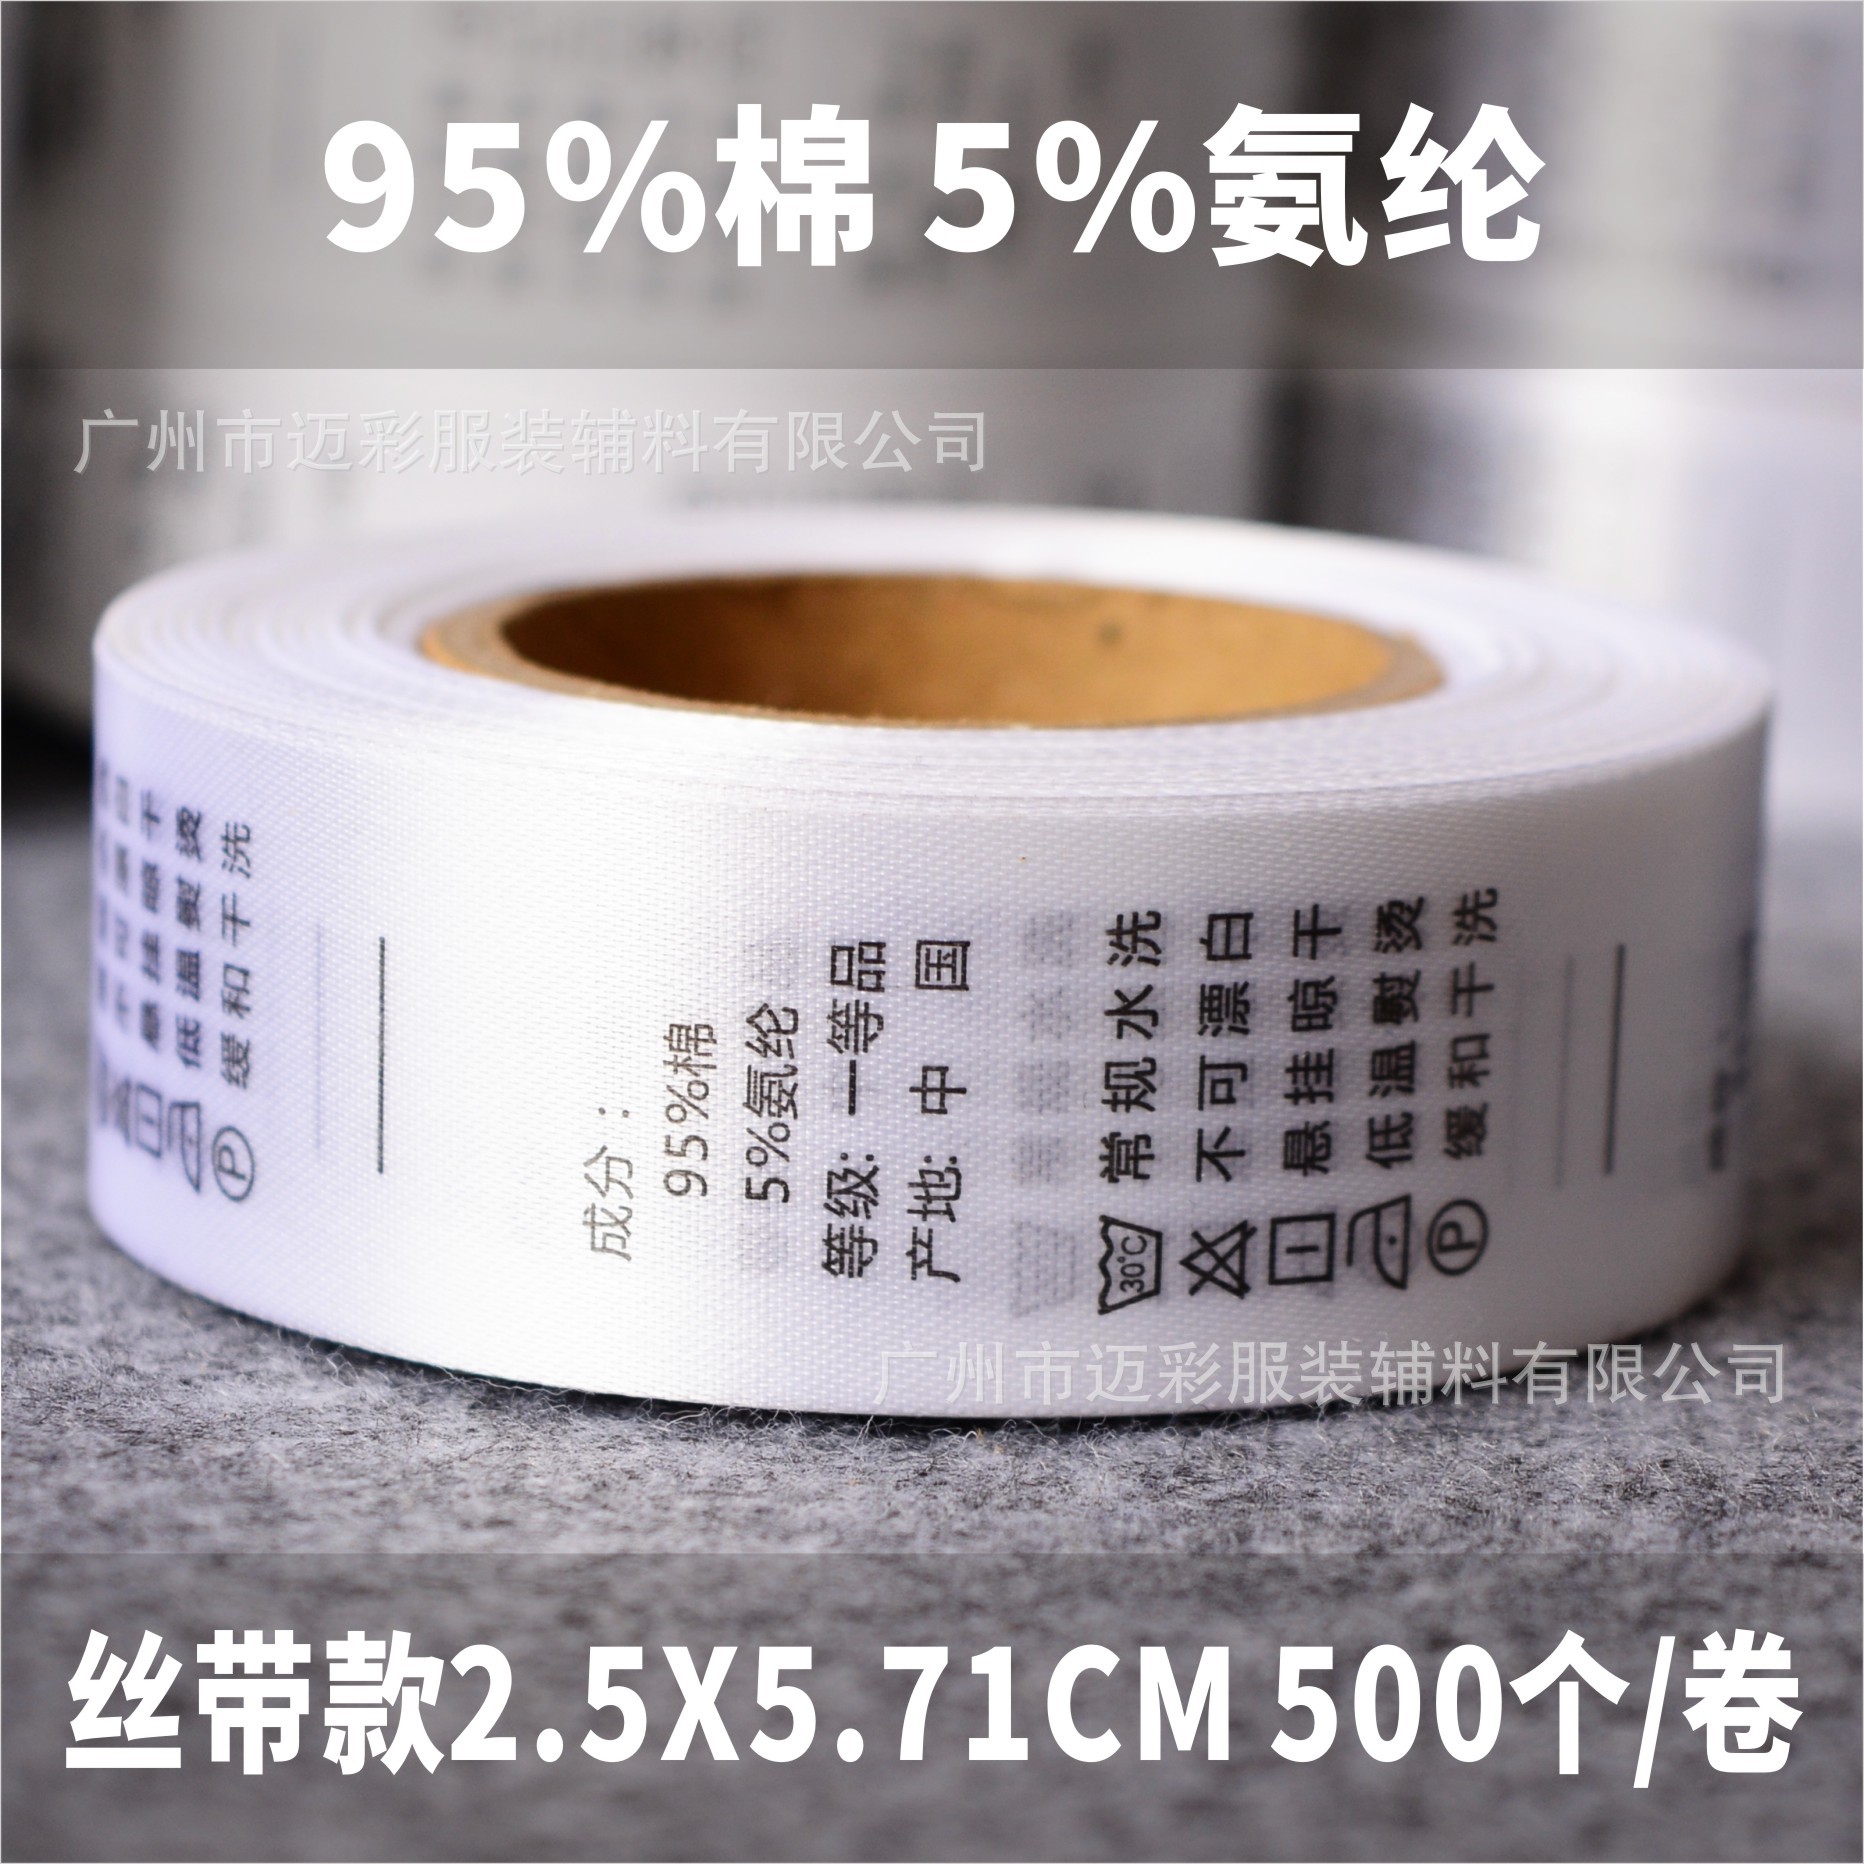 中文丝带95%棉 5%氨纶.jpg